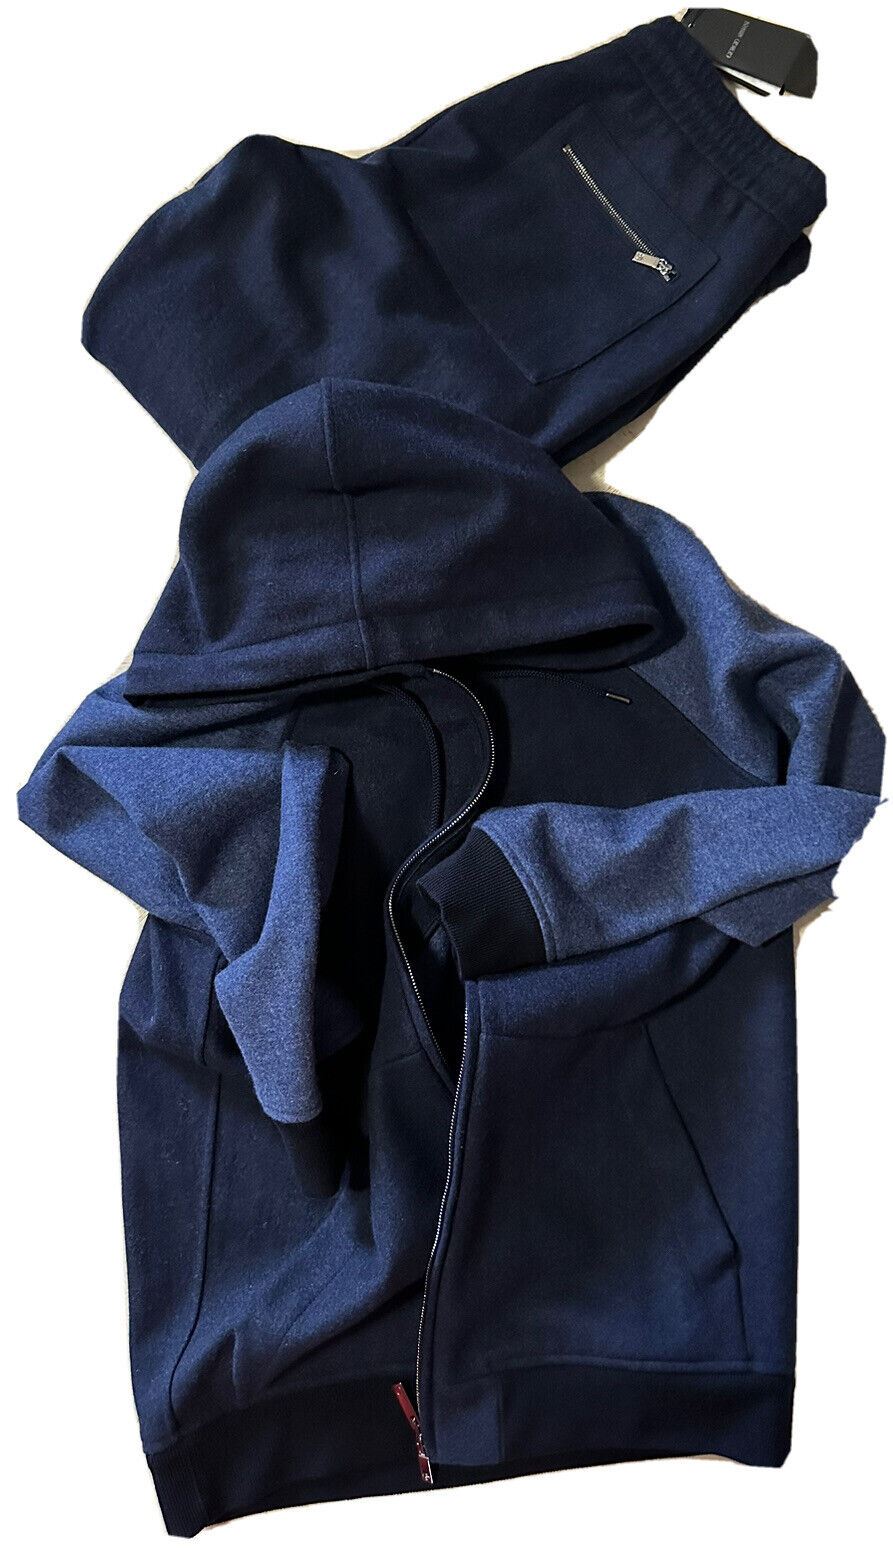 Neu $7690 Giorgio Armani Herren-Kaschmir-Trainingsanzug, Farbe Marineblau, 38 US/48 EU, Italien